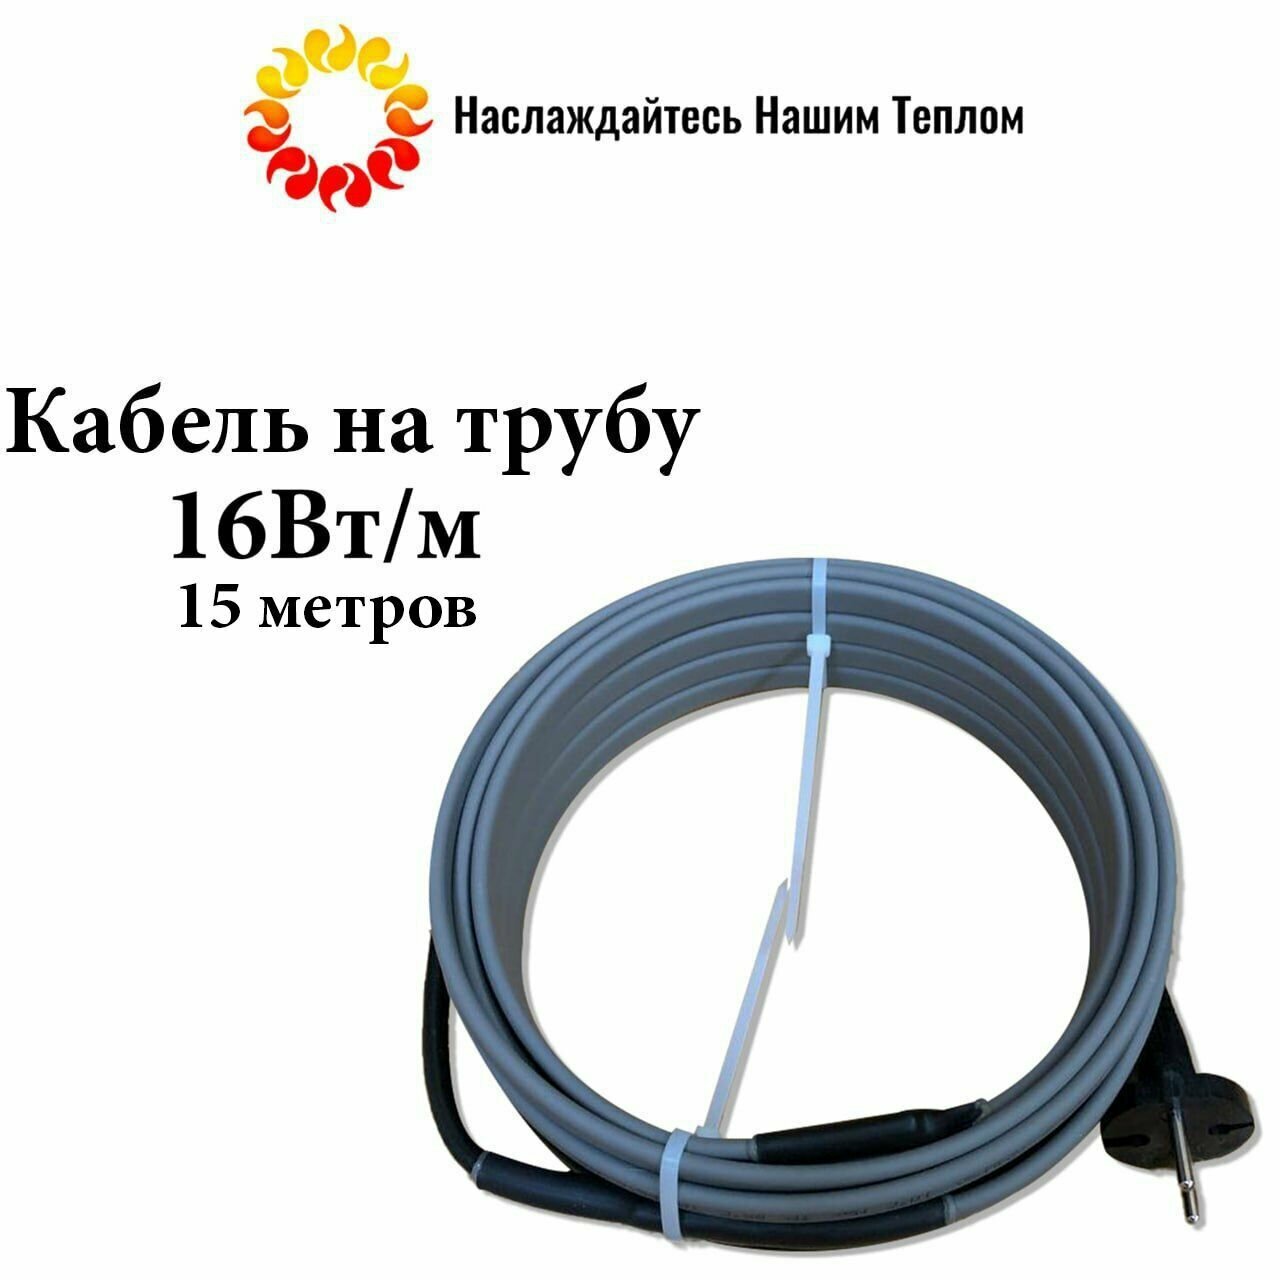 Саморегулирующийся греющий кабель на трубу (наружный) для водопровода и канализации, 16 Вт/м, длина 15 метров